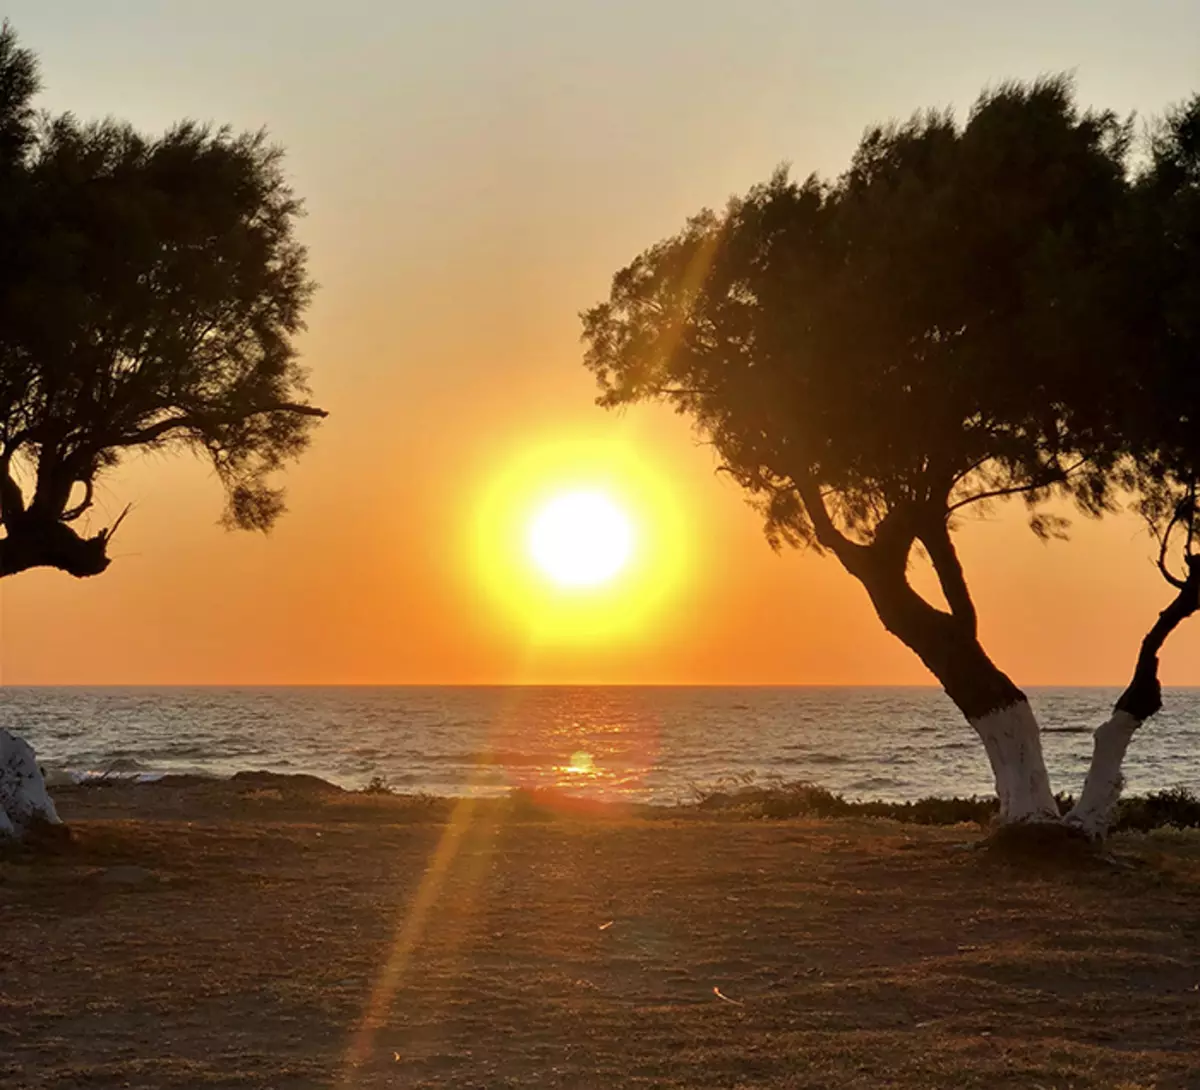 Saulėlydis Egėjo jūros pakrantėje